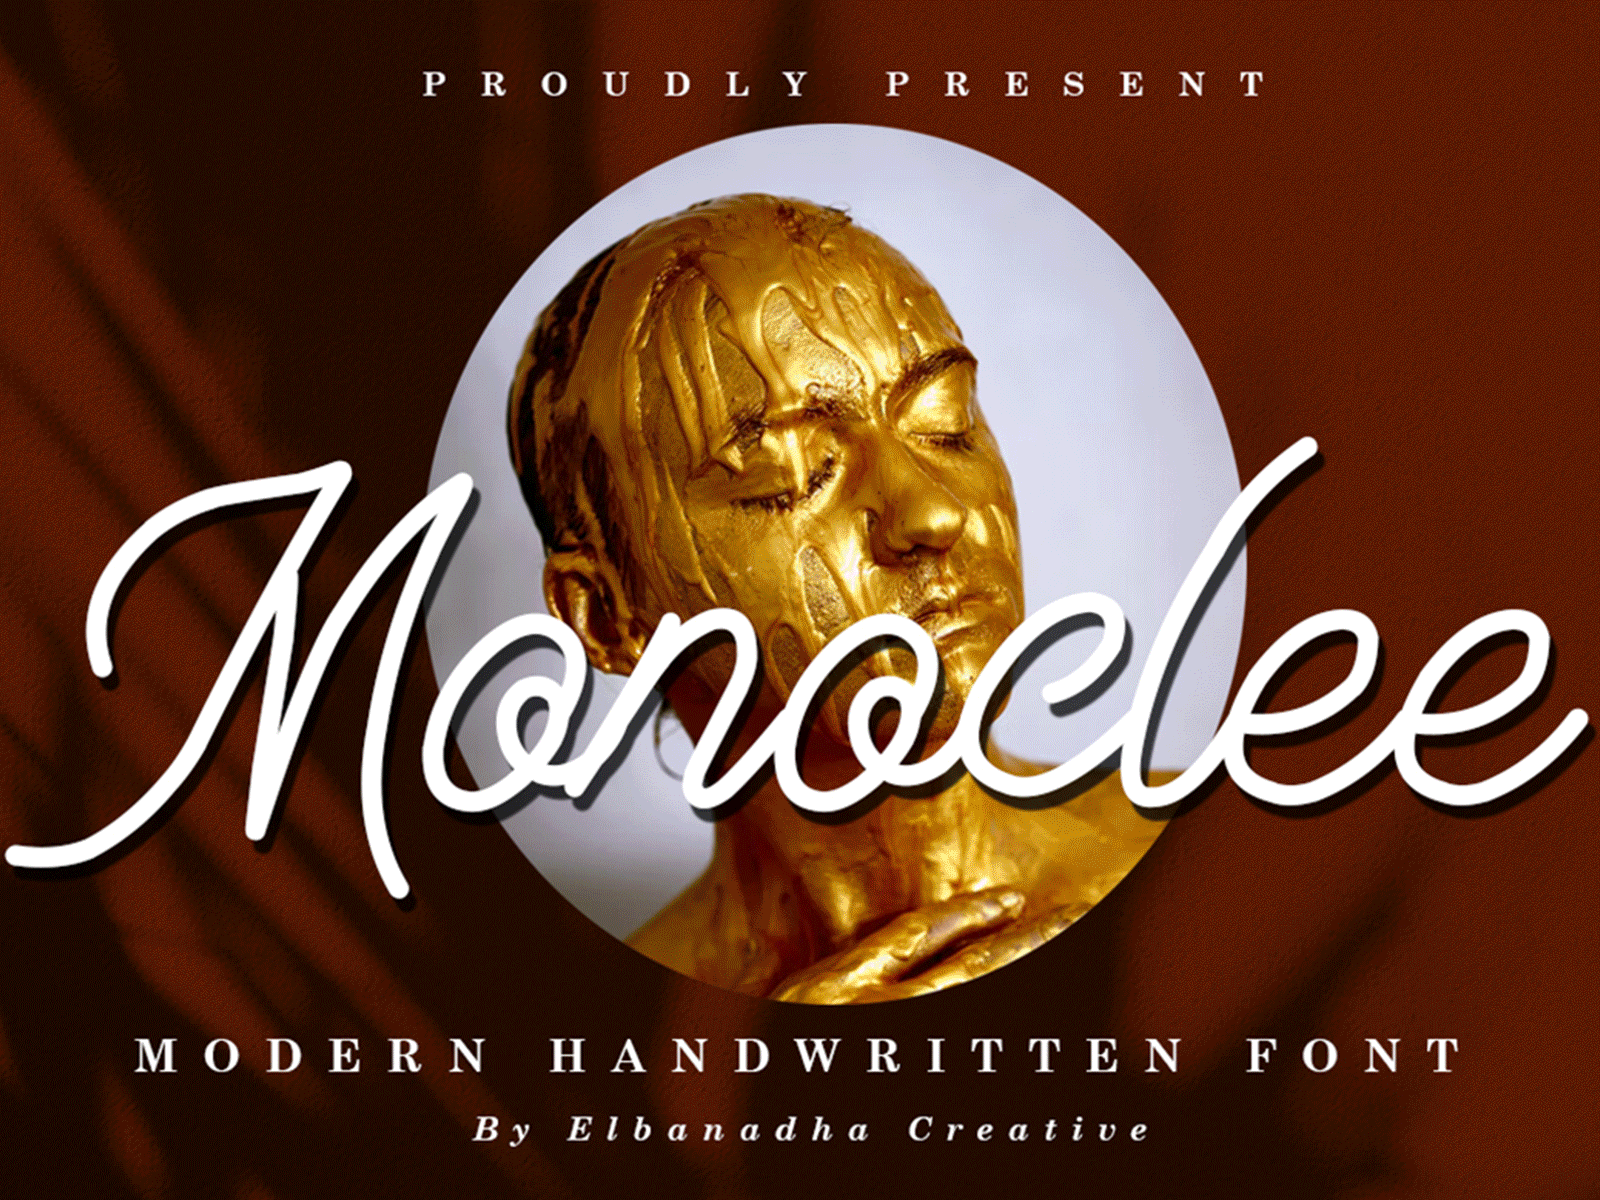 MONOCLEE | MODERN HANDWRITTEN FONT